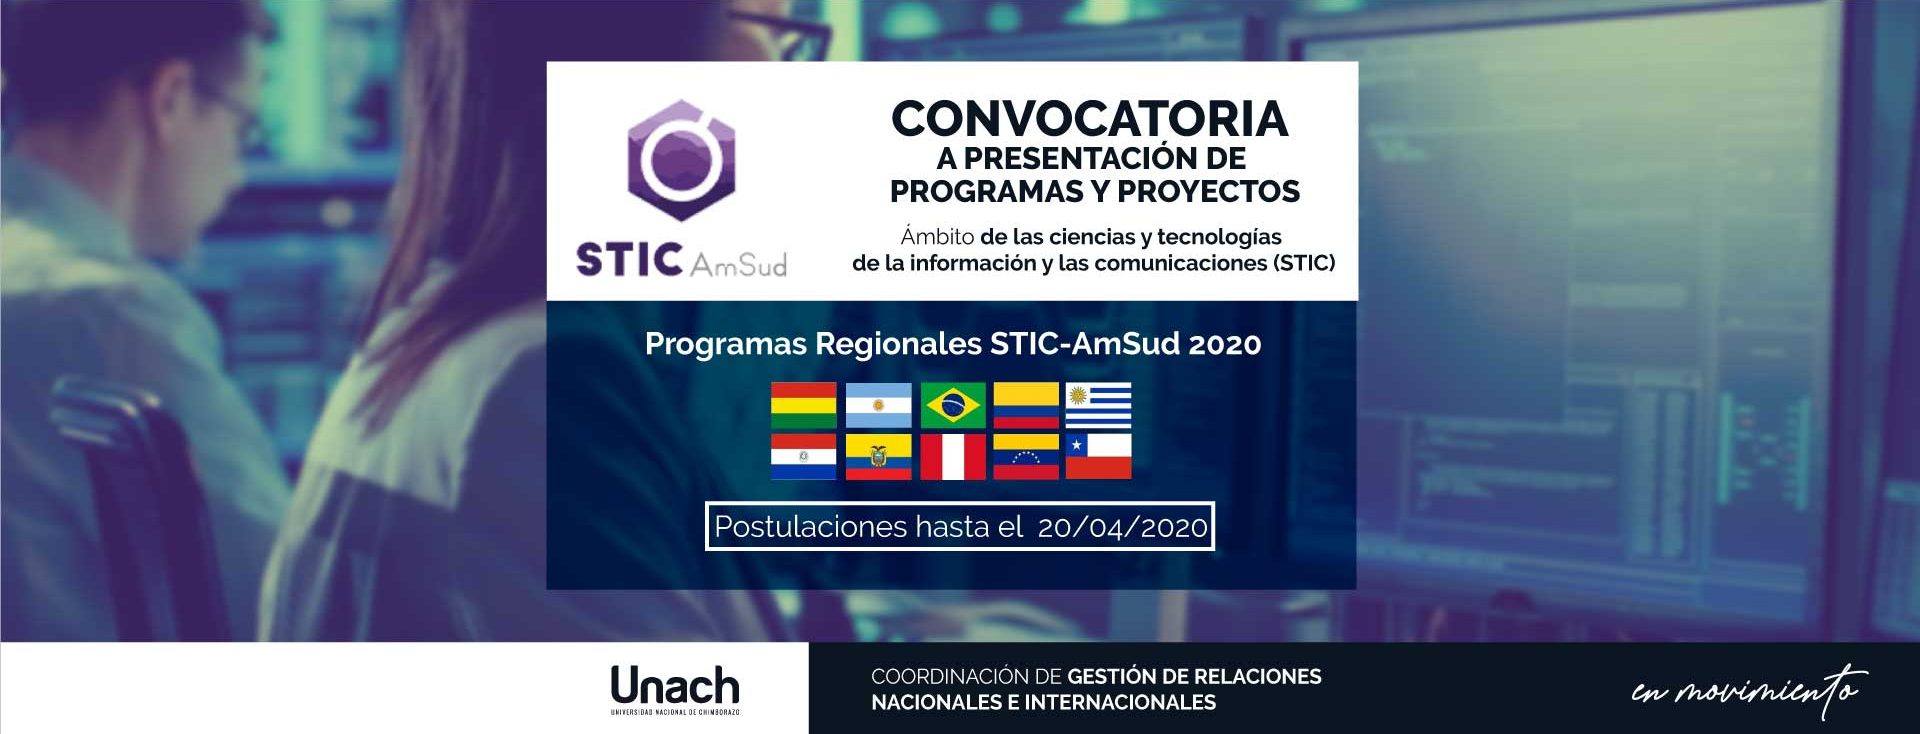 CONVOCATORIA A PRESENTACIÓN DE PROGRAMAS Y PROYECTOS STIC-AMSUD 2020